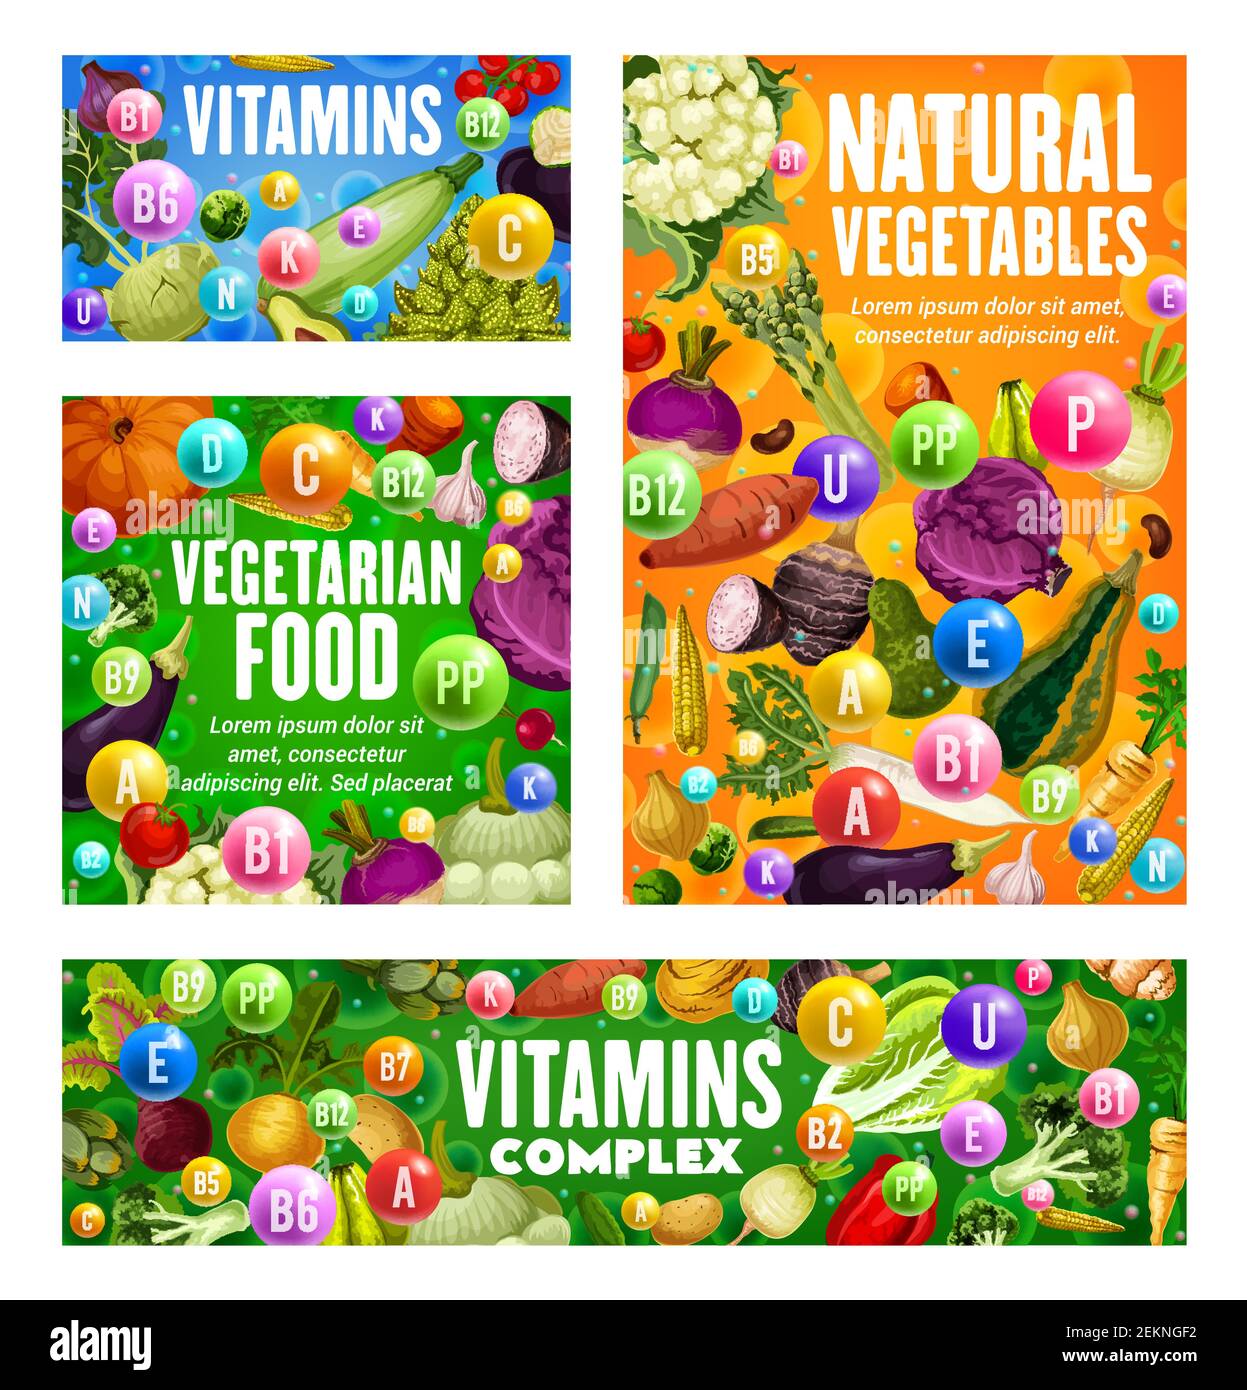 Gemüse und Vitamine, natürliche gesunde vegetarische Lebensmittel, Vektor. Vitamine Komplex in landwirtschaftlichen Karotten, Kürbis und Sellerie, Tomaten und Zucchini-Kürbis, Biene Stock Vektor